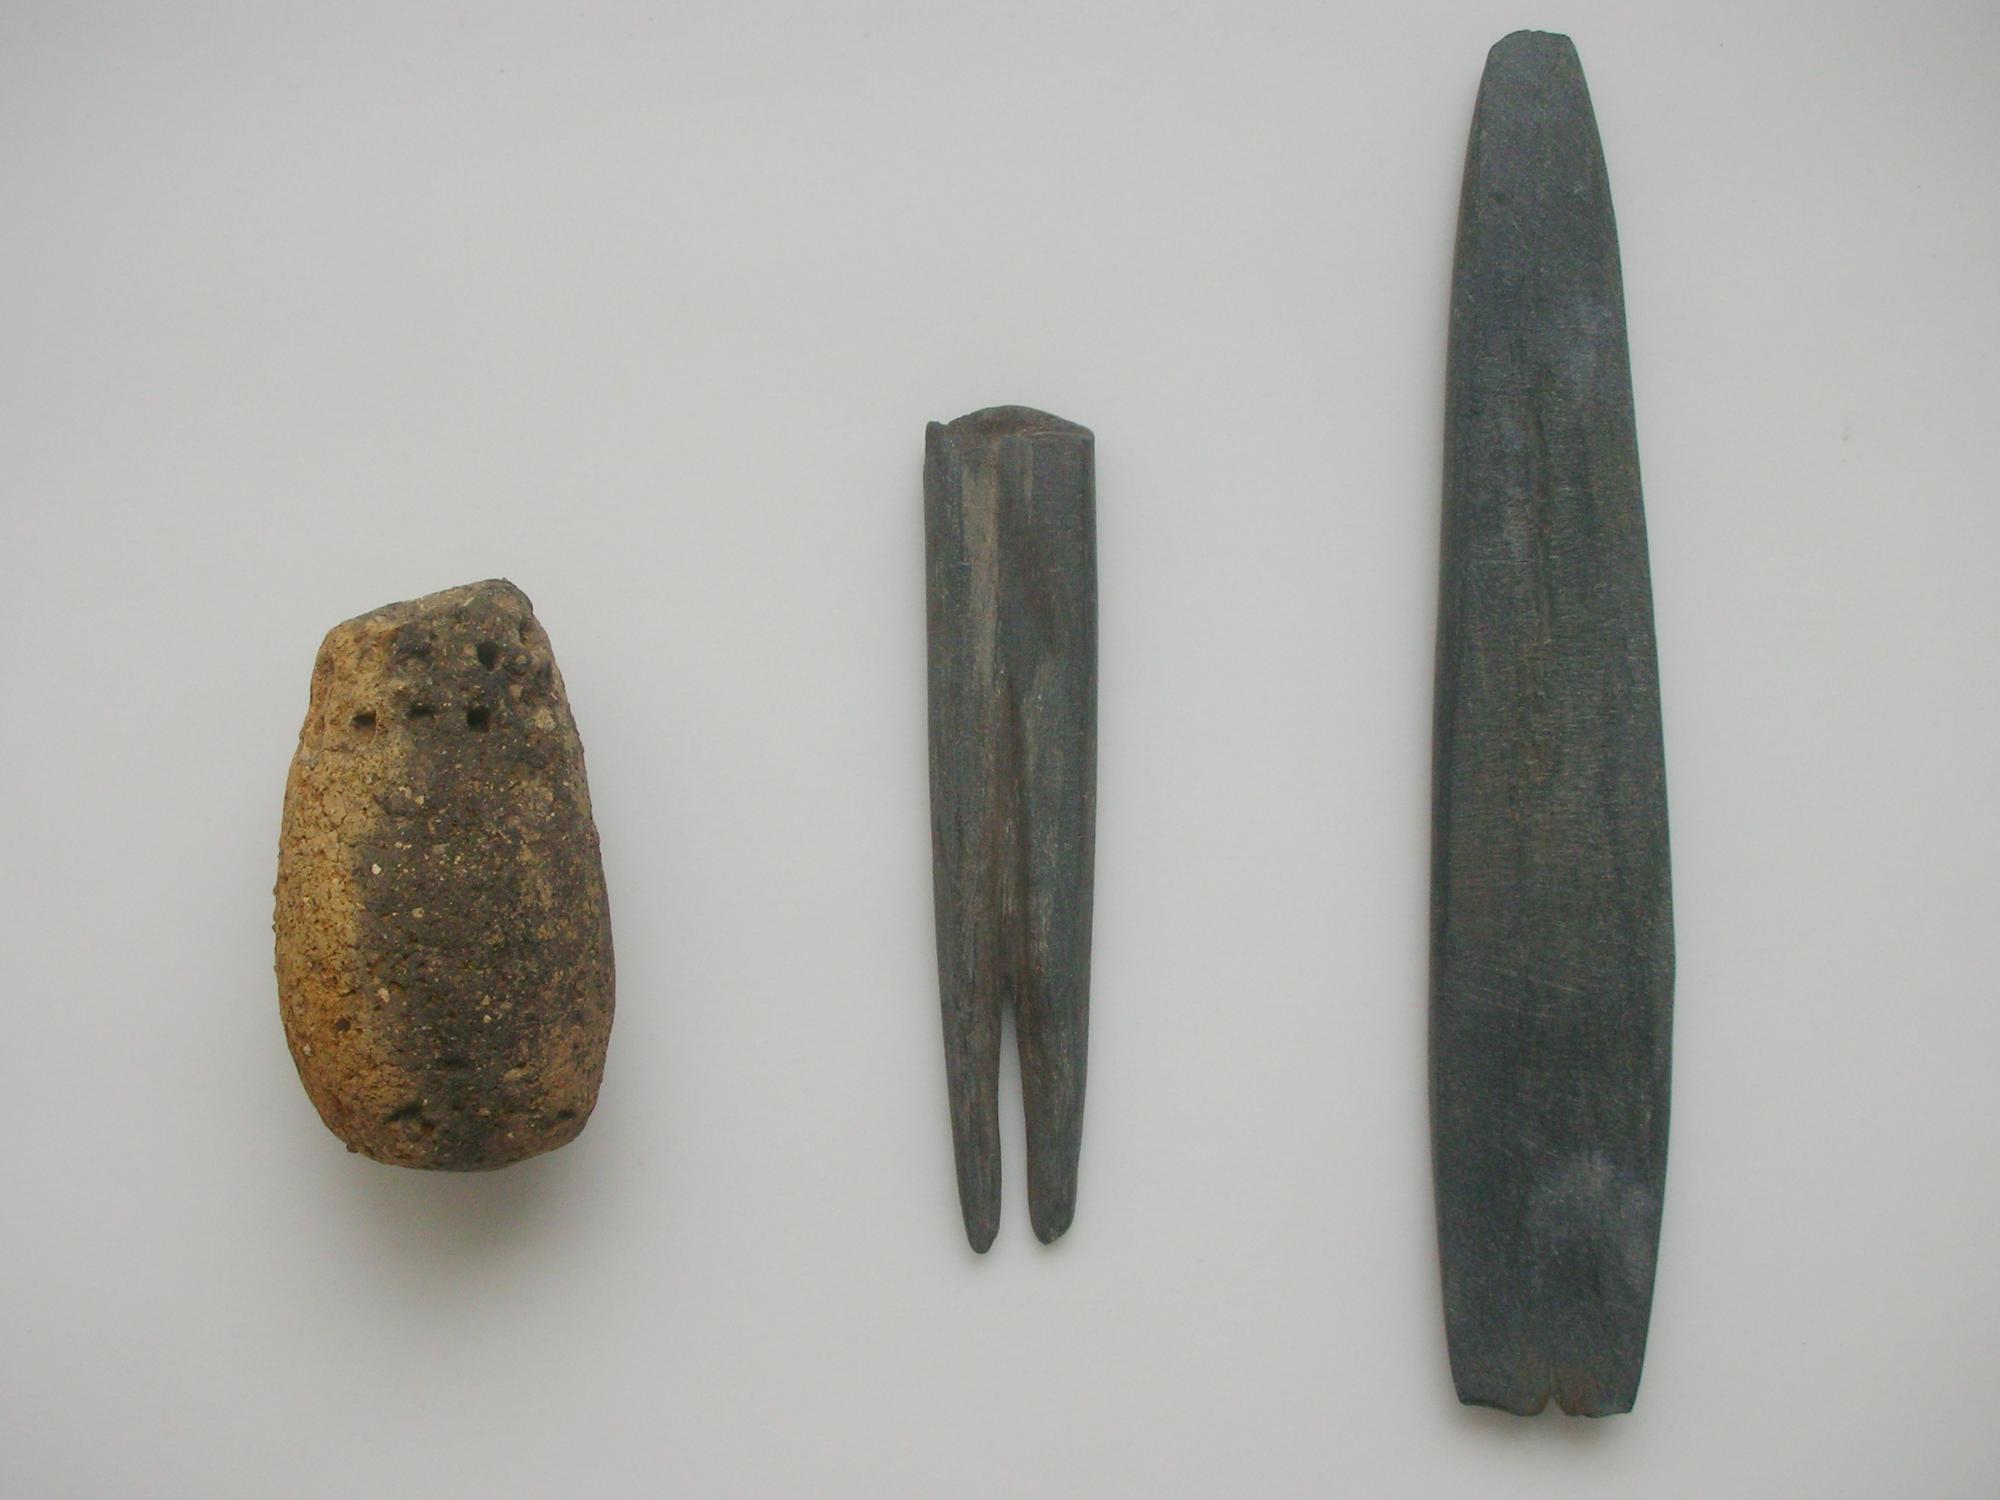 左から、茶色のイチジク形土製品、先端が2つに分かれた黒っぽい燕尾形石製品と、先端が鋭利になるよう削られた黒っぽい燕尾形石製品の写真